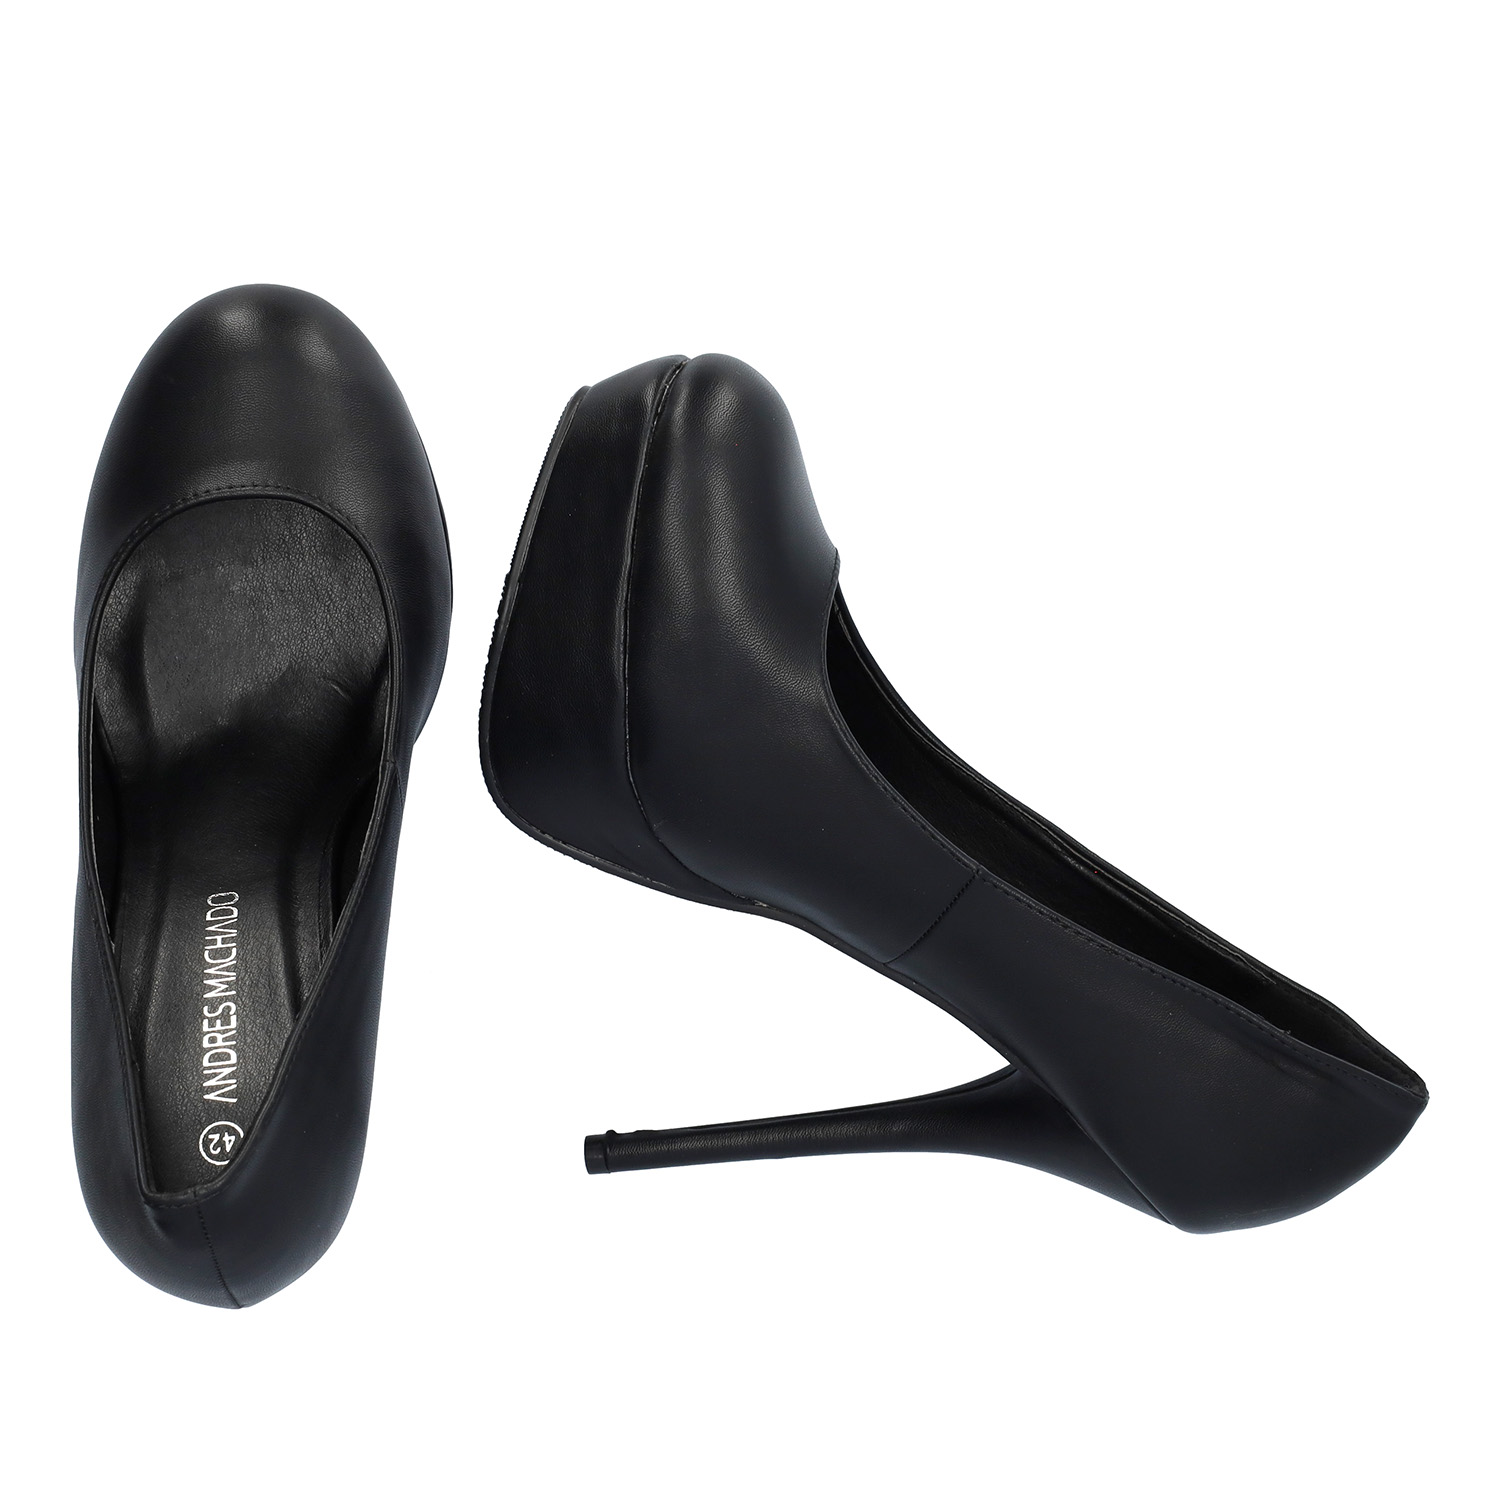 Schwarze Lederimitat High heels. 14 cm Absatz 